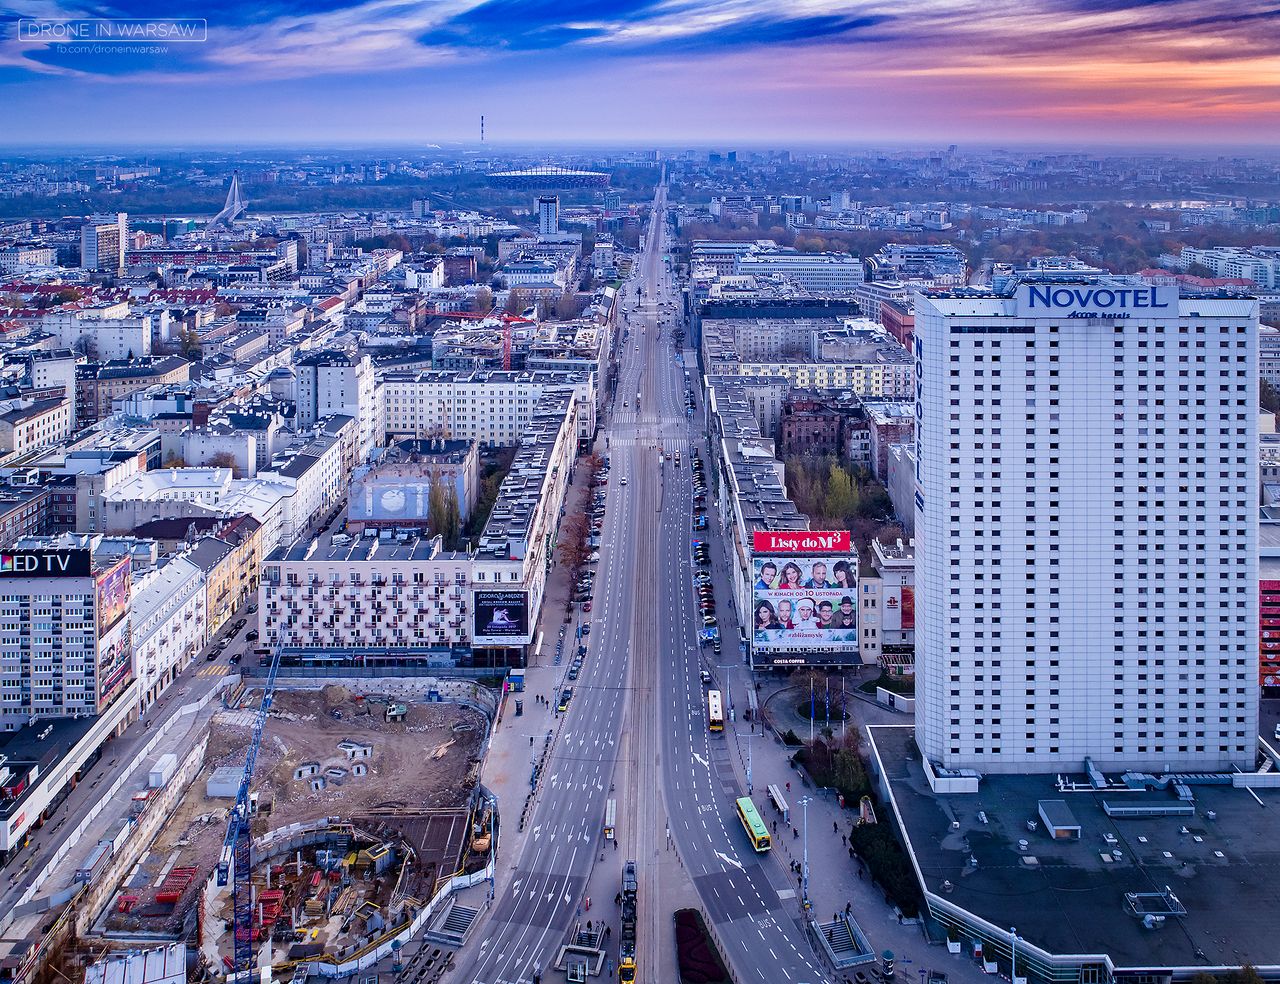 Poza klasycznymi zdjęciami na Facebooku Drone in Warsaw można znaleźć także wysokiej rozddzielczości panoramy sferyczne realizowane w różnych punktach miasta. Wiele z fotografii można nabyć w postaci fotoobrazów w różnych formatach na stronie Drone in Warsaw